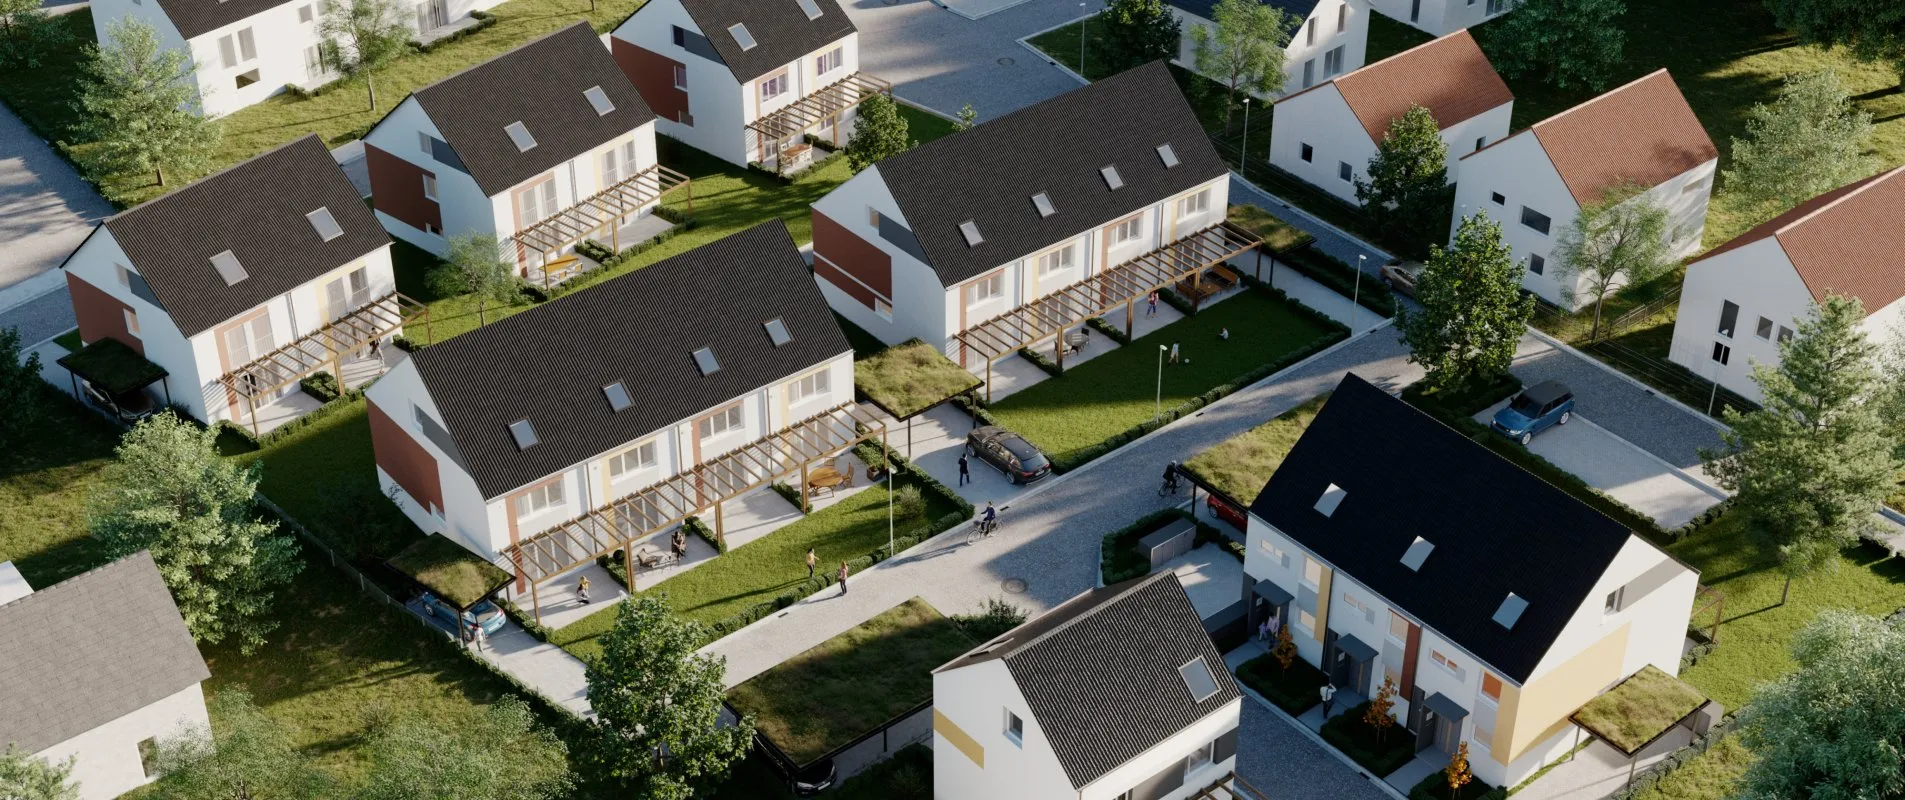 Bauvorhaben eines Wohngebiets aus Vogelperspektive / BAUSTOLZ Stuttgart GmbH Rodga